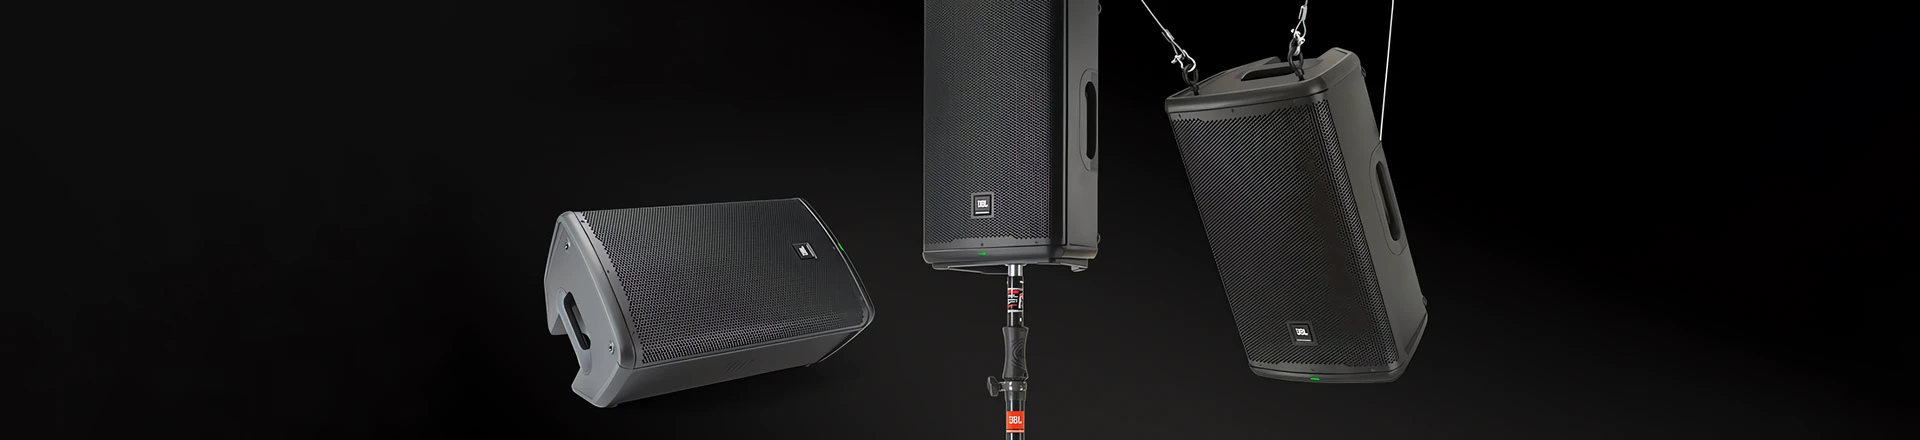 JBL zaprezentował EON700 - Nową serię przenośnych głośników z Bluetooth